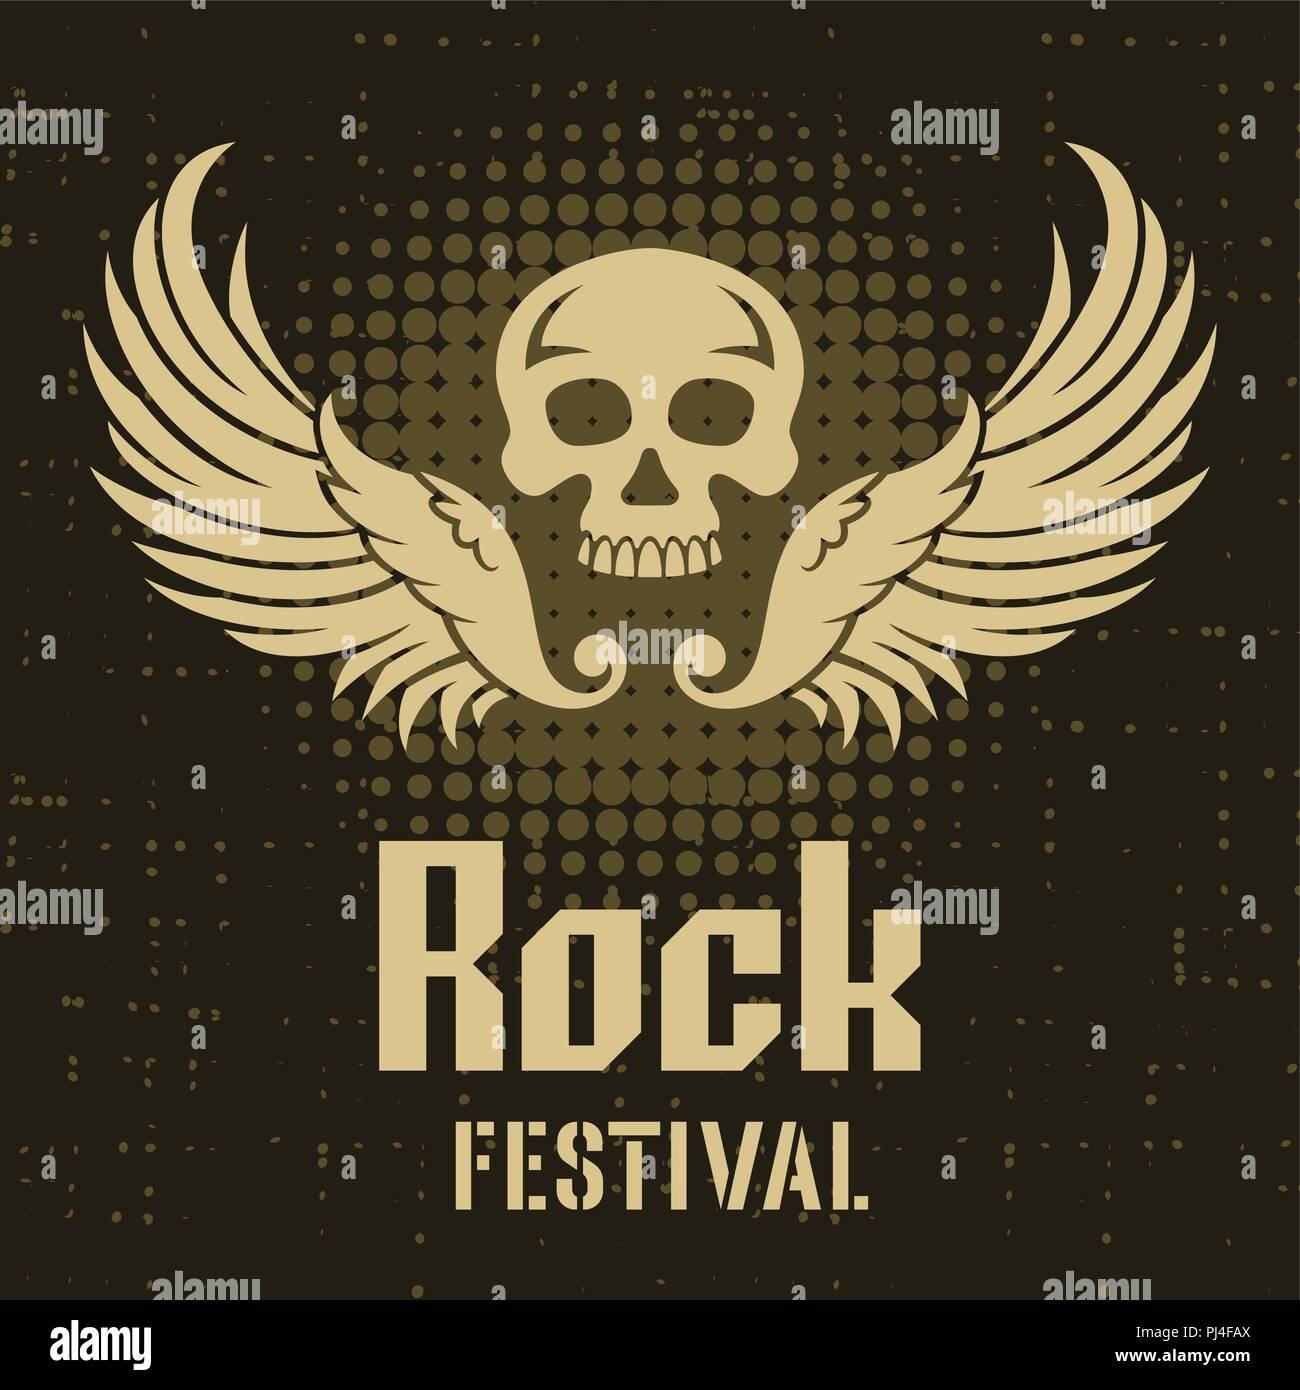 Rock Festival Plakat Vorlage im Vintage Style mit einem Schädel und Flügel Stock Vektor